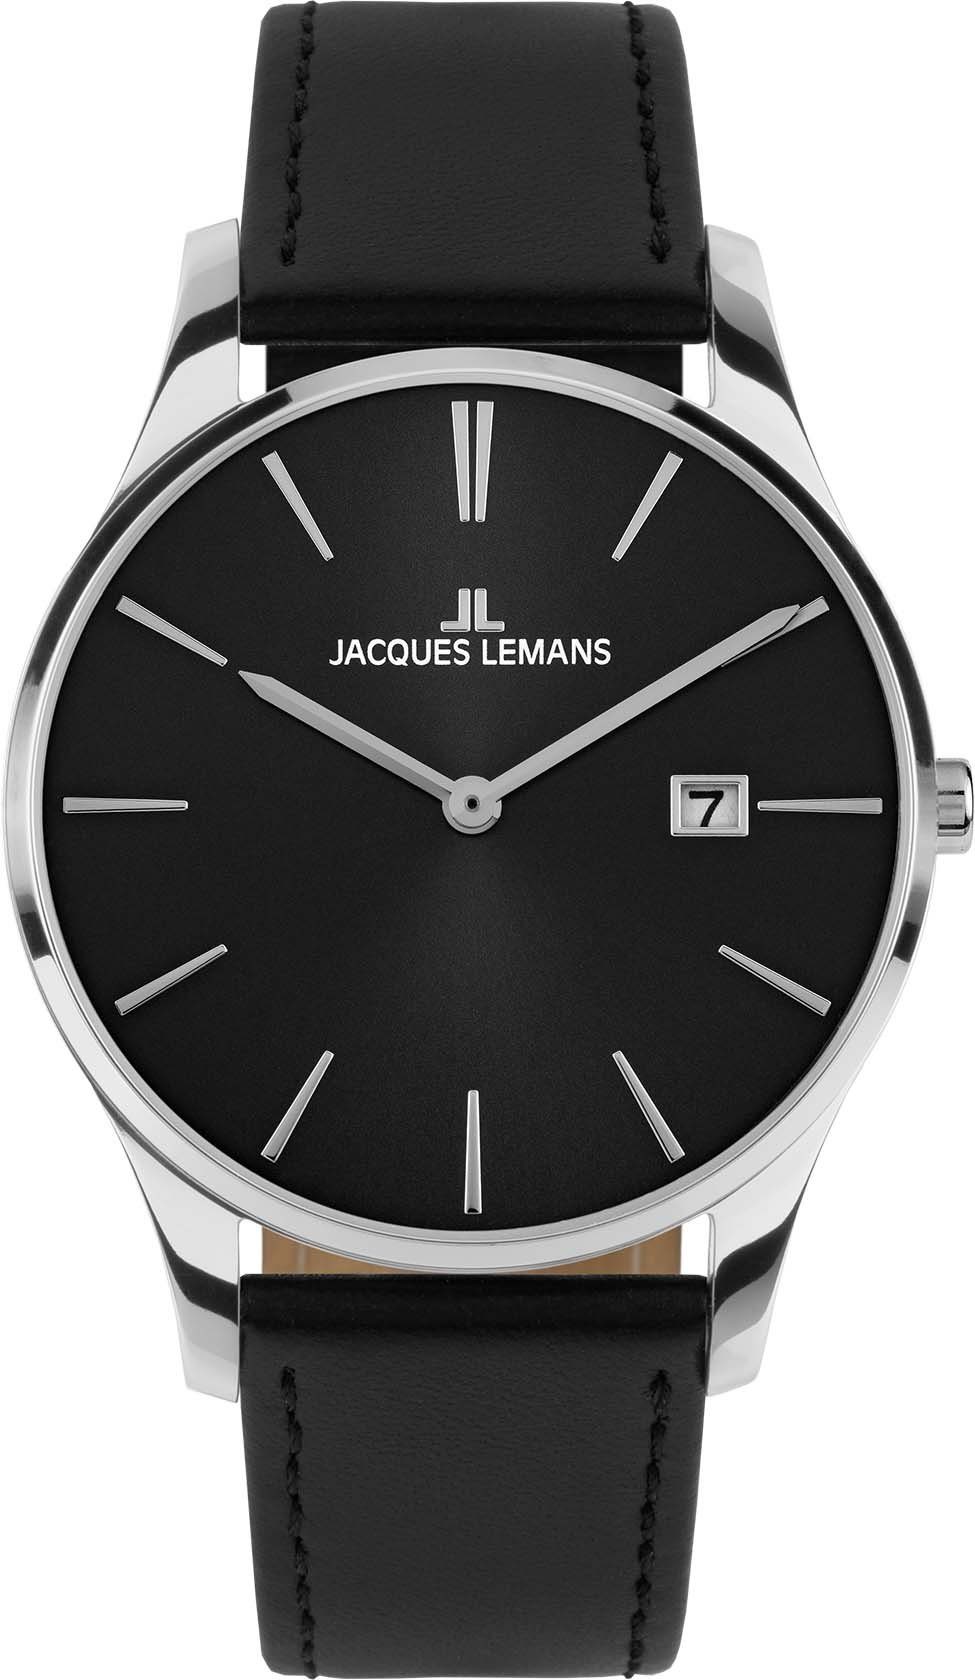 Jacques Lemans Quarzuhr London, 1-2122A, Armbanduhr, Damenuhr, Datum, gehärtetes Crystexglas